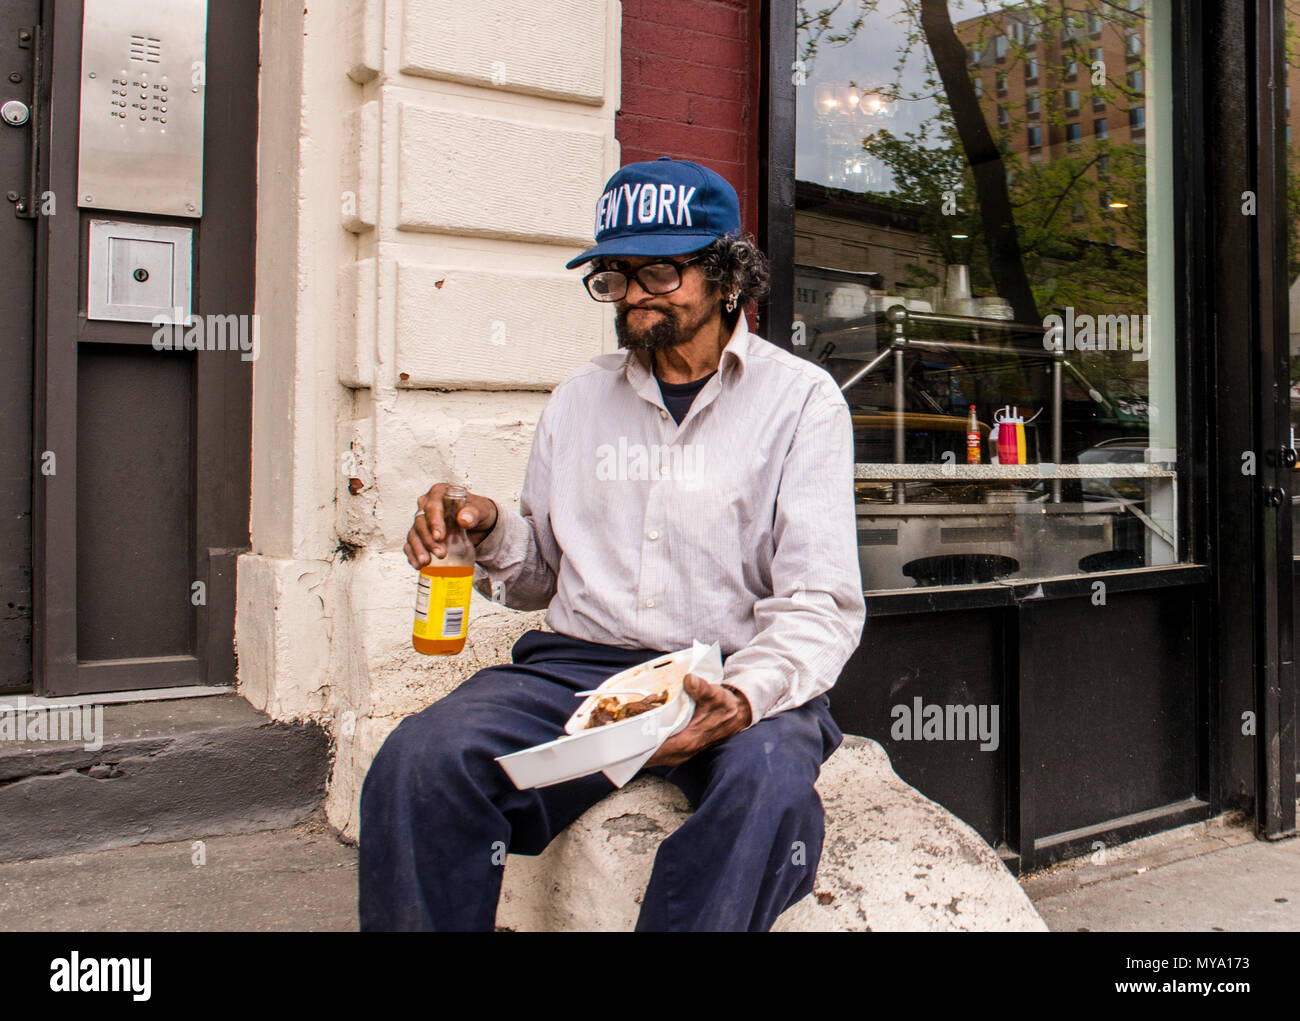 Porträt eines Mannes mit einer New York cap, sitzend an der Wand, das Mittagessen, der gerade in die Kamera Stockfoto